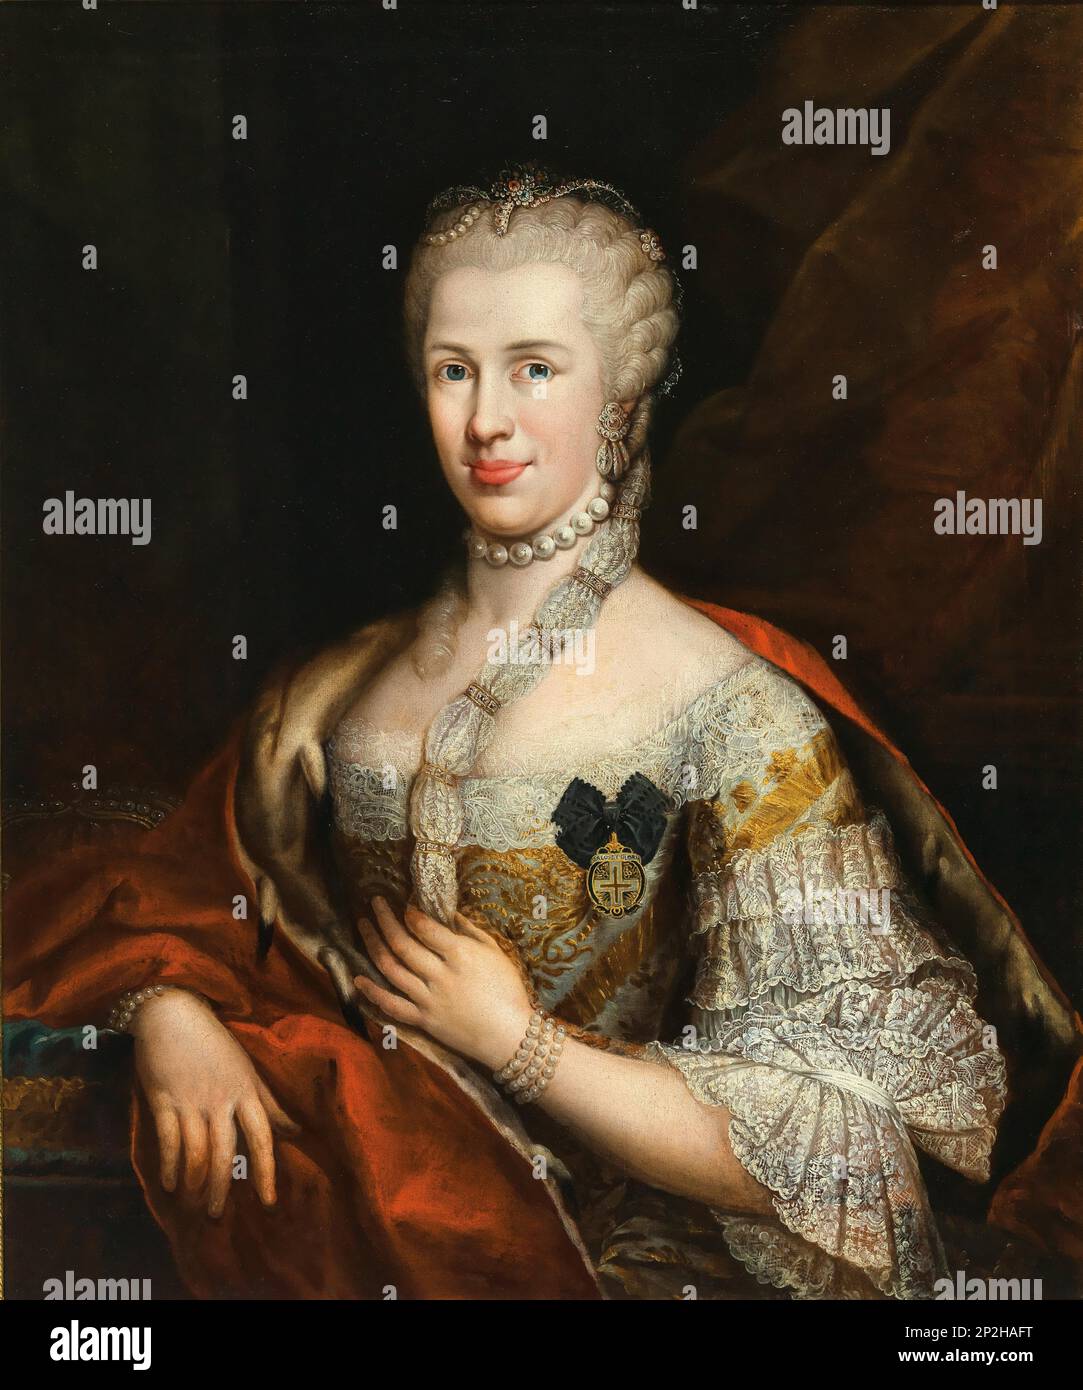 Ritratto di Infanta Maria Luisa di Spagna (1745-1792), imperatrice del Sacro Romano Impero, con l'Ordine della Croce Stella. Collezione privata. Foto Stock